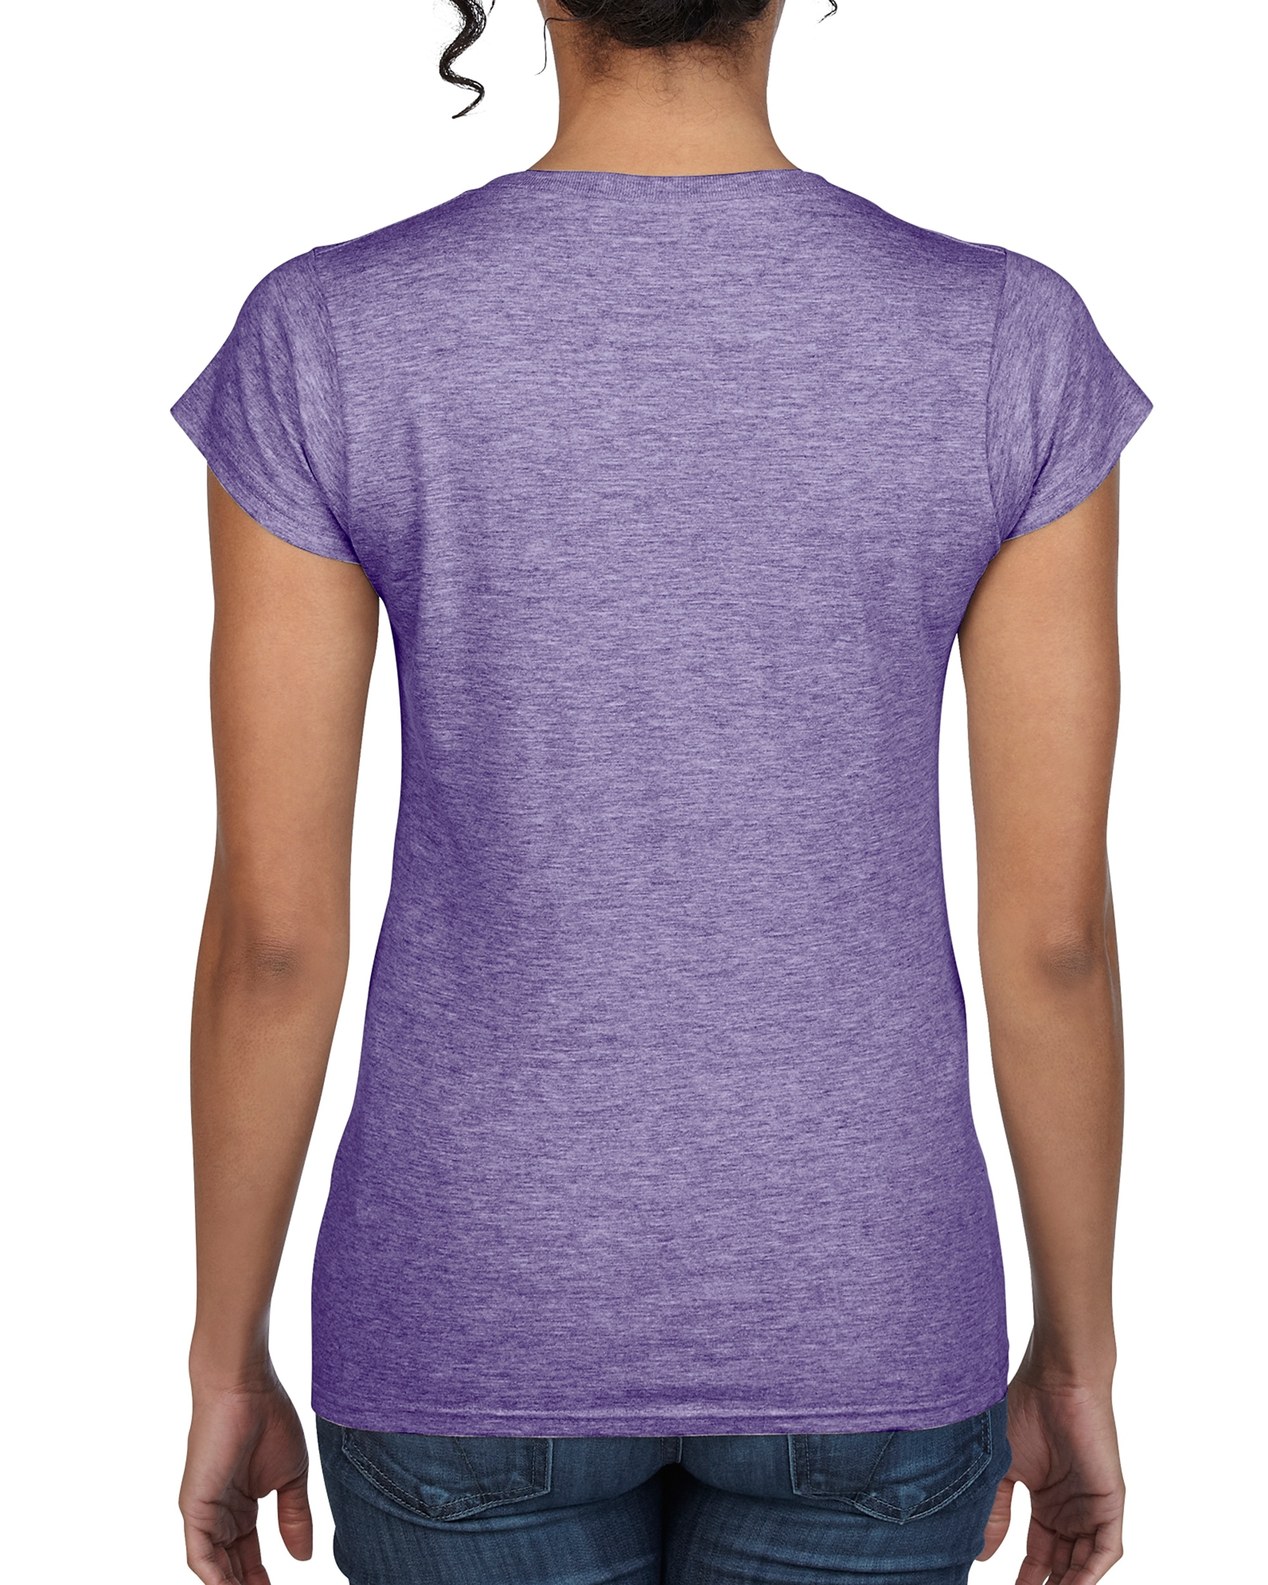 Zella Womens Size Small Purple Long Sleeve Hand Covers V-Neck Shirt -  Conseil scolaire francophone de Terre-Neuve et Labrador